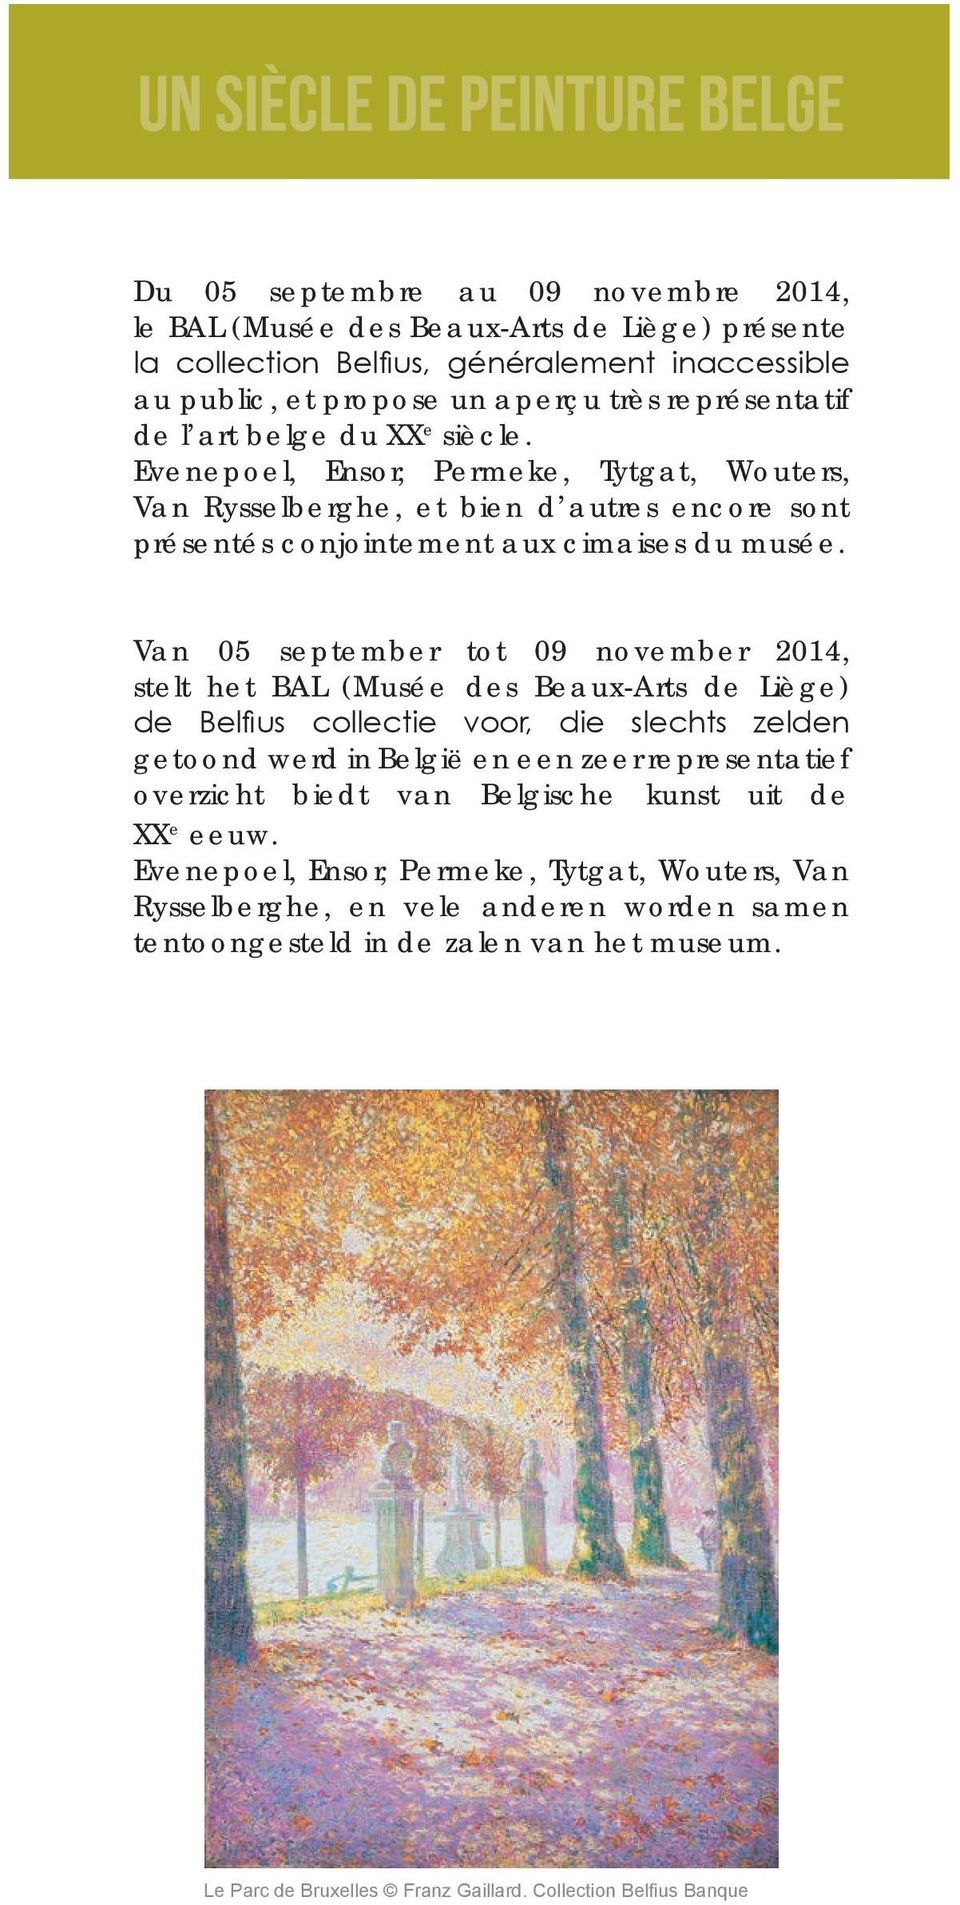 Van 05 september tot 09 november 2014, stelt het BAL (Musée des Beaux-Arts de Liège) de Belfi us collectie voor, die slechts zelden getoond werd in België en een zeer representatief overzicht